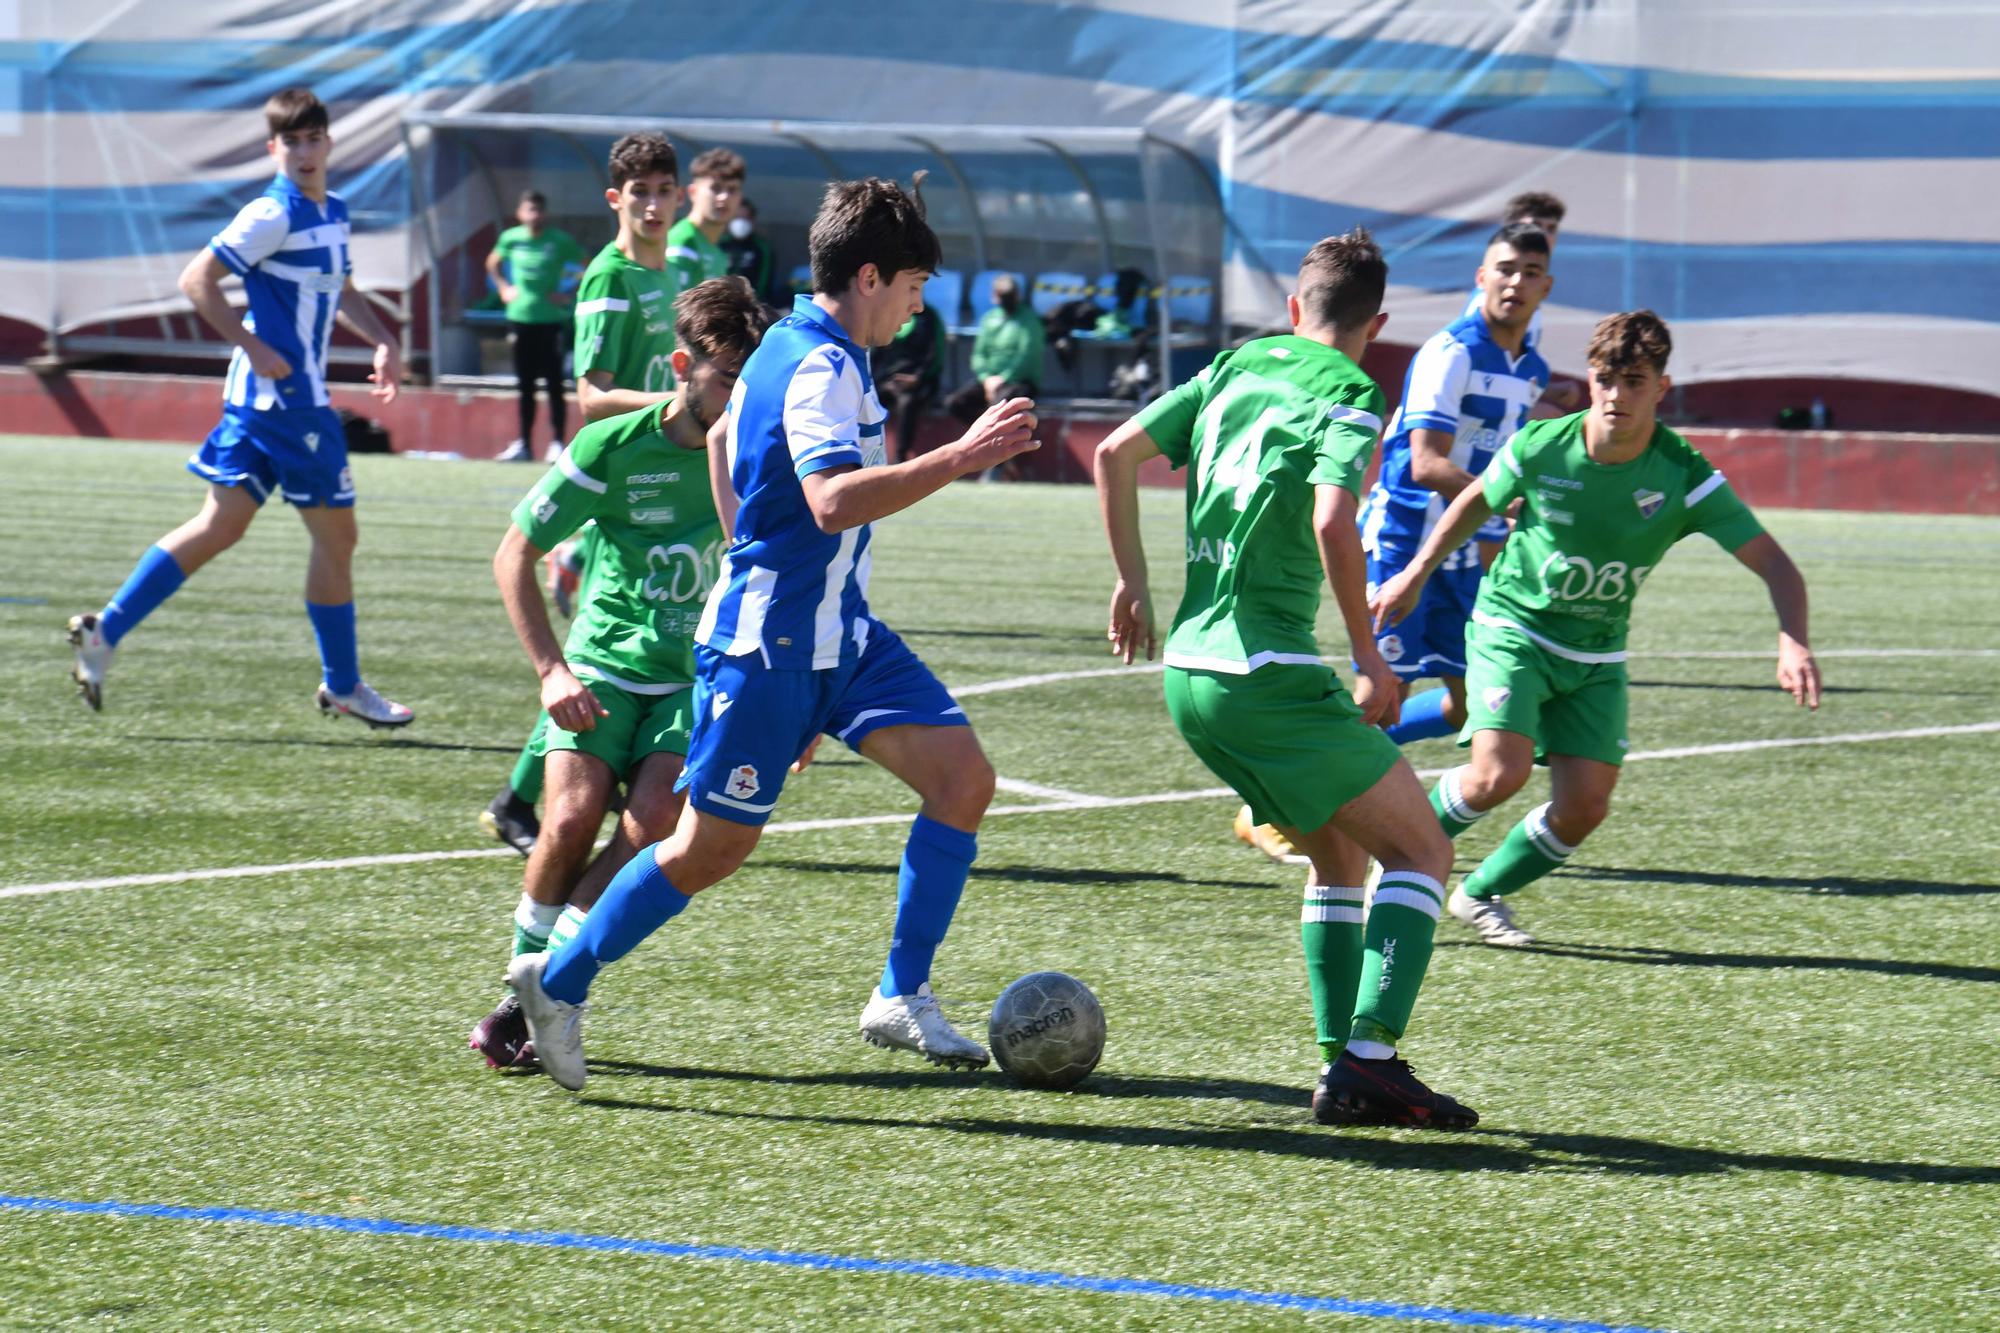 El Dépor juvenil le gana 0-2 al Calasanz y se impone en la fase gallega de la División de Honor